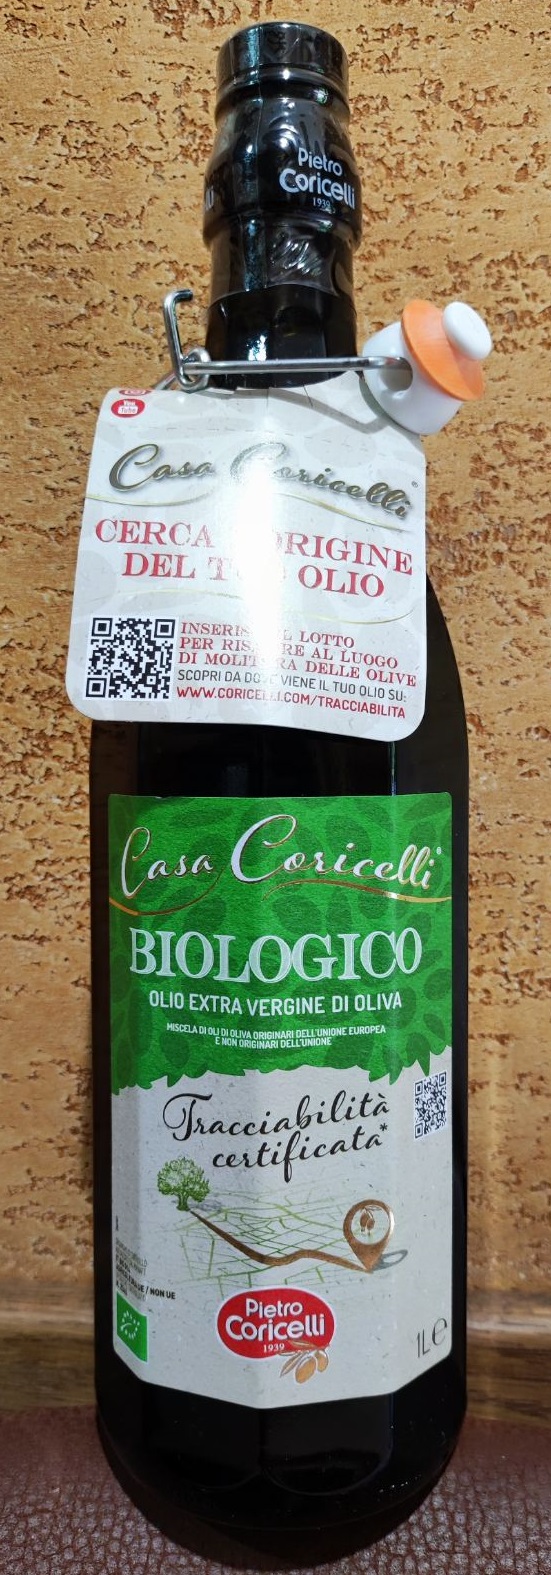 Масло оливковое CASA CORICELLI BIOLOGICO Pietro Coricelli extra vergine 1л Первый холодный отжим Италия